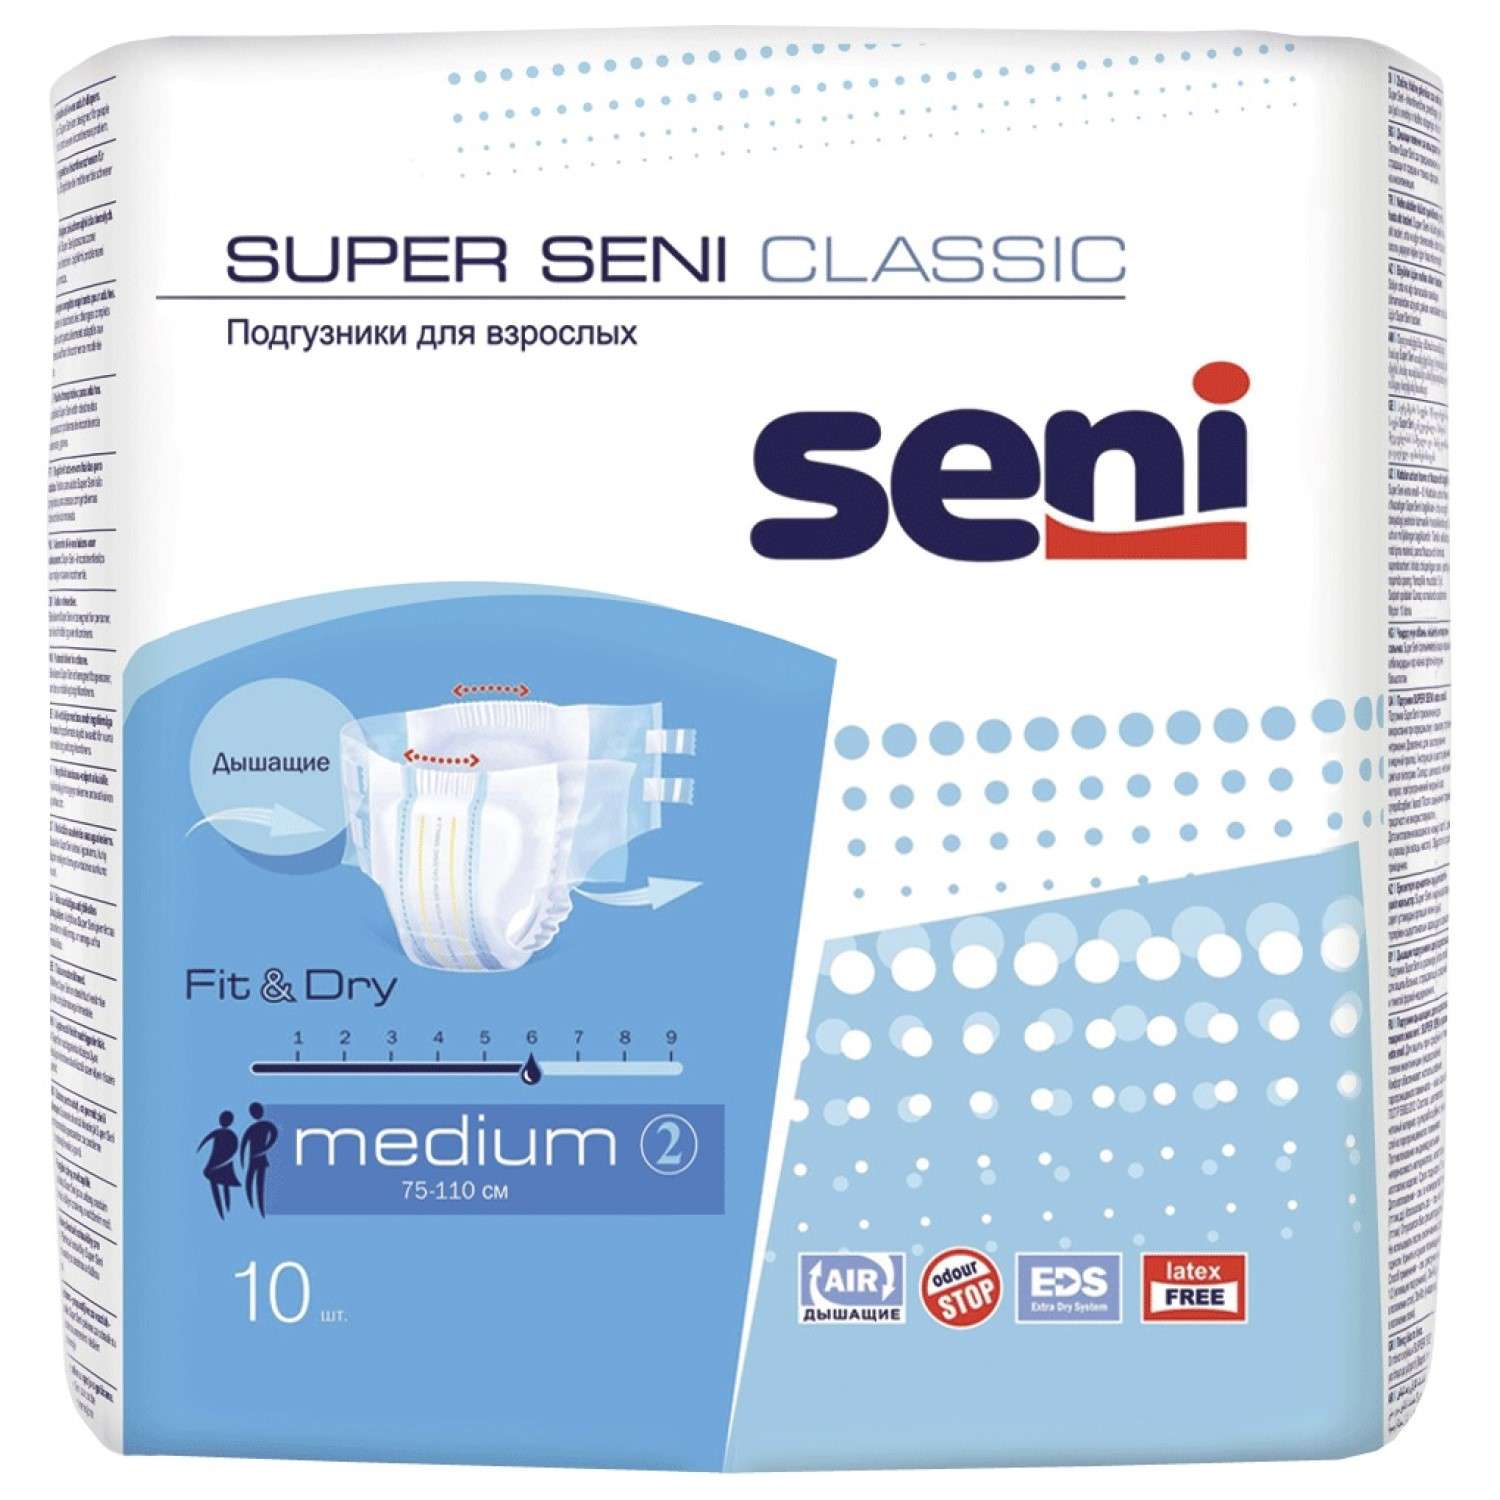 Подгузники для взрослых Super Seni Classic medium 10шт - фото 1